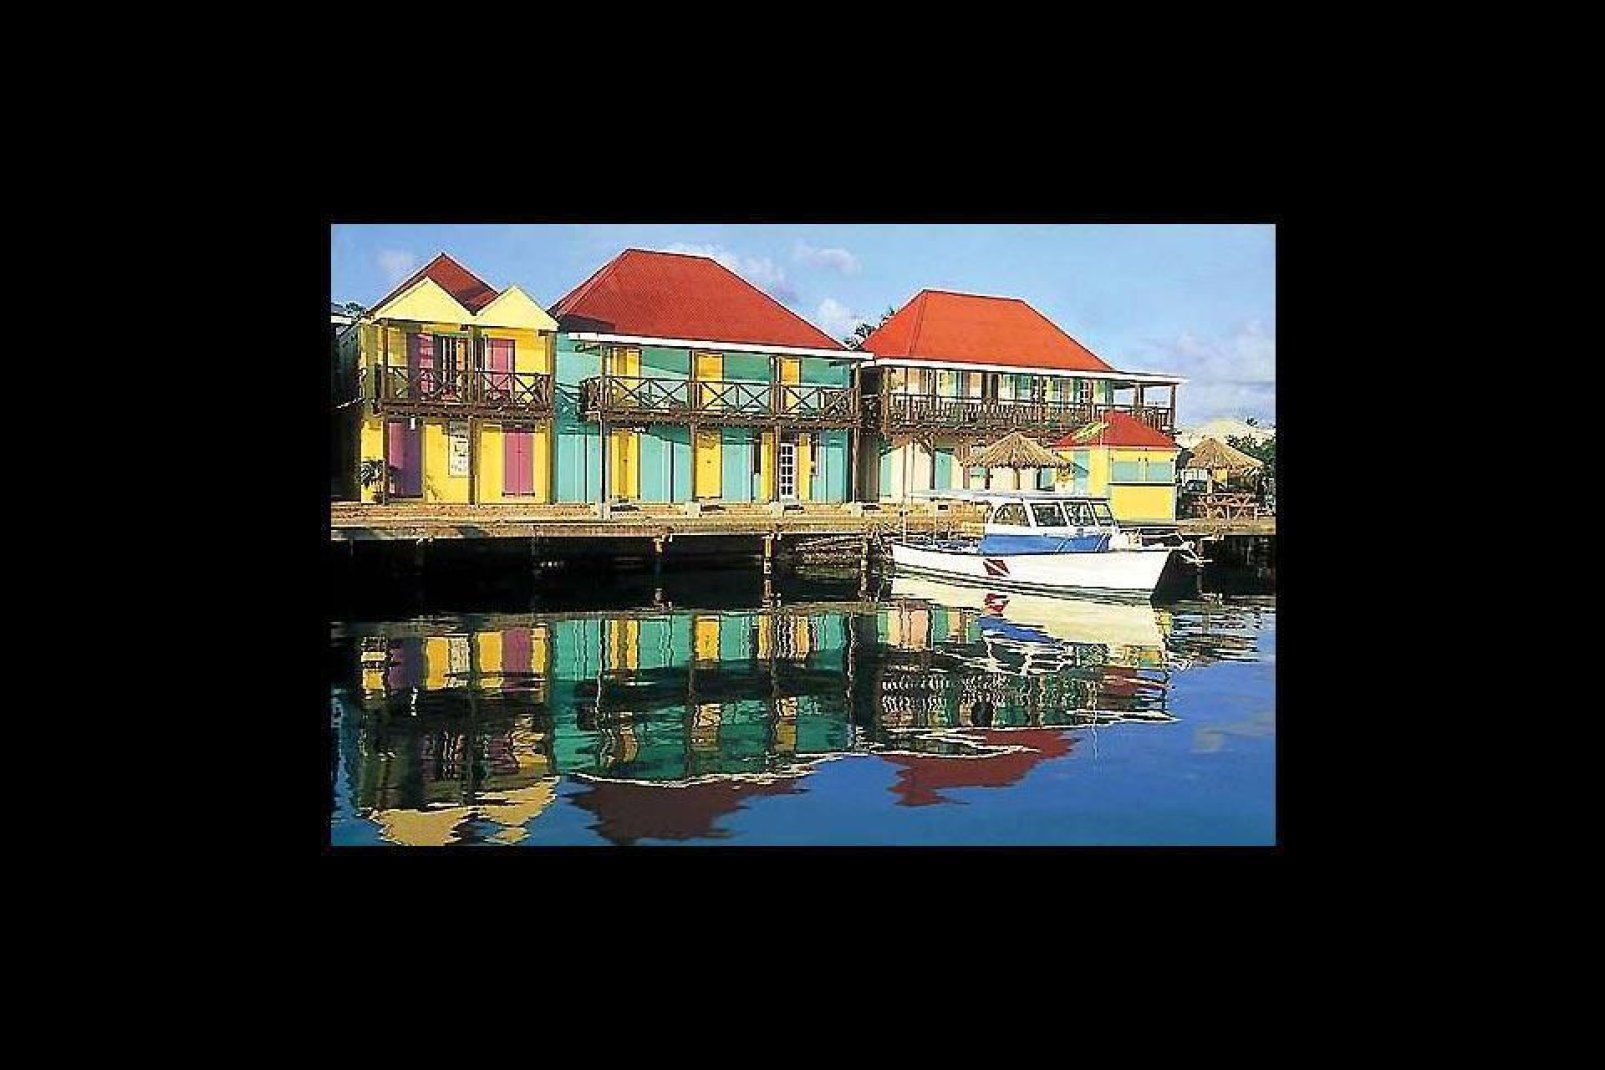 Die Stadt liegt an der größten Bucht der Insel und hat ihre Kolonialarchitektur mit pastellfarbenen Holzhäusern bewahrt.